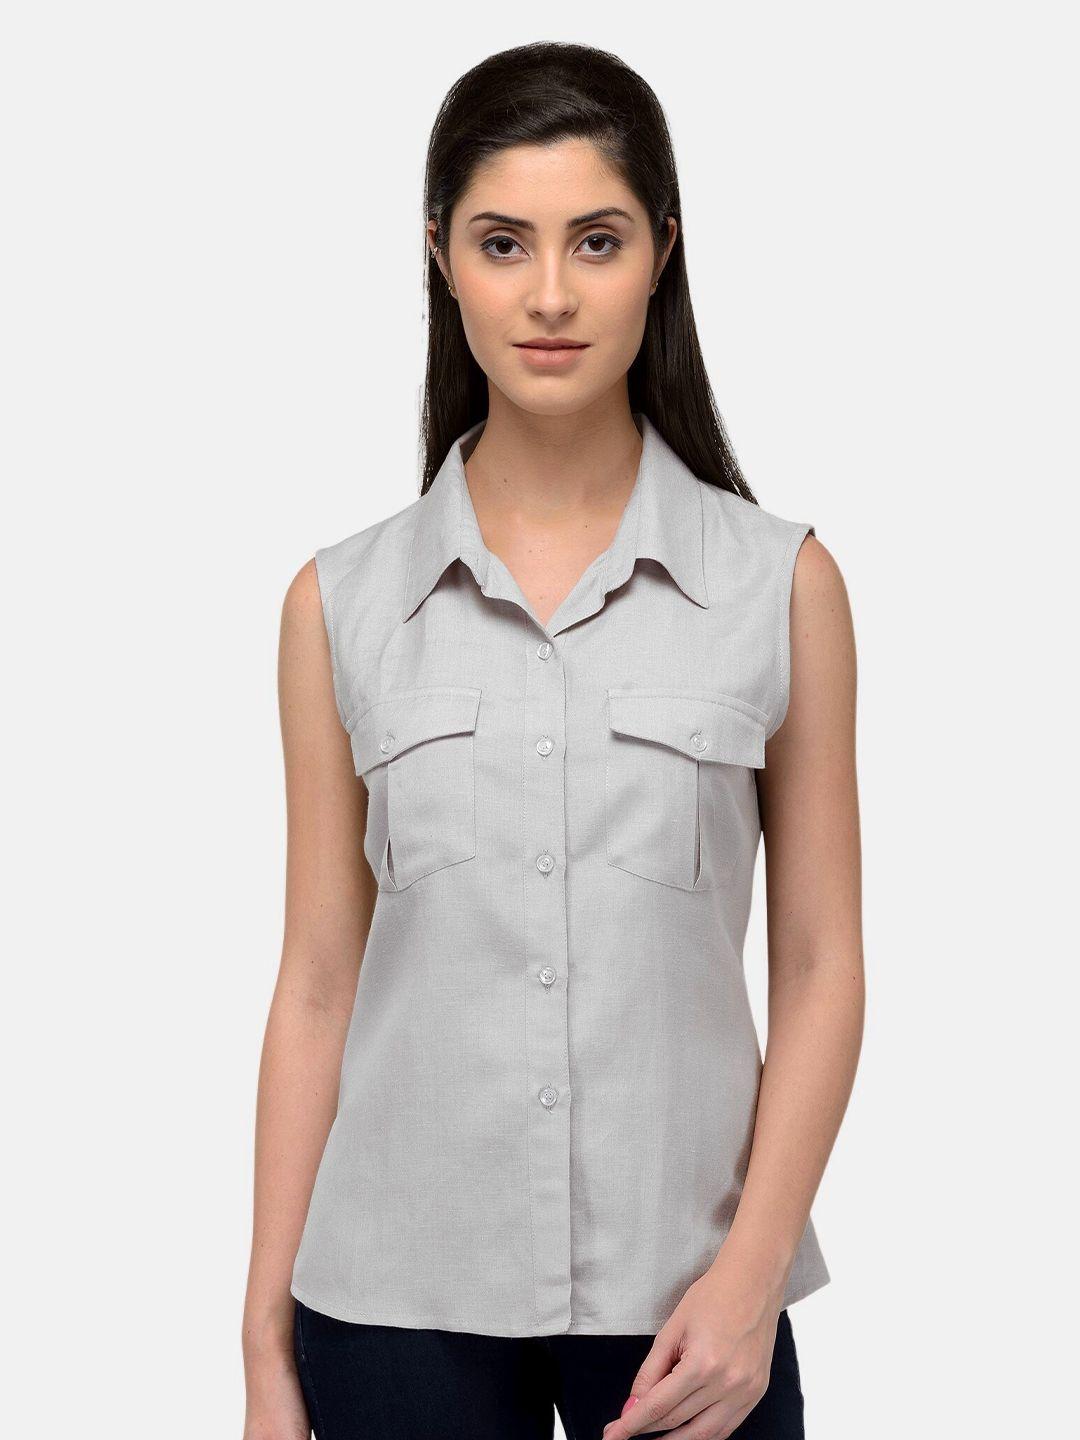 patrorna-women-white-comfort-casual-shirt